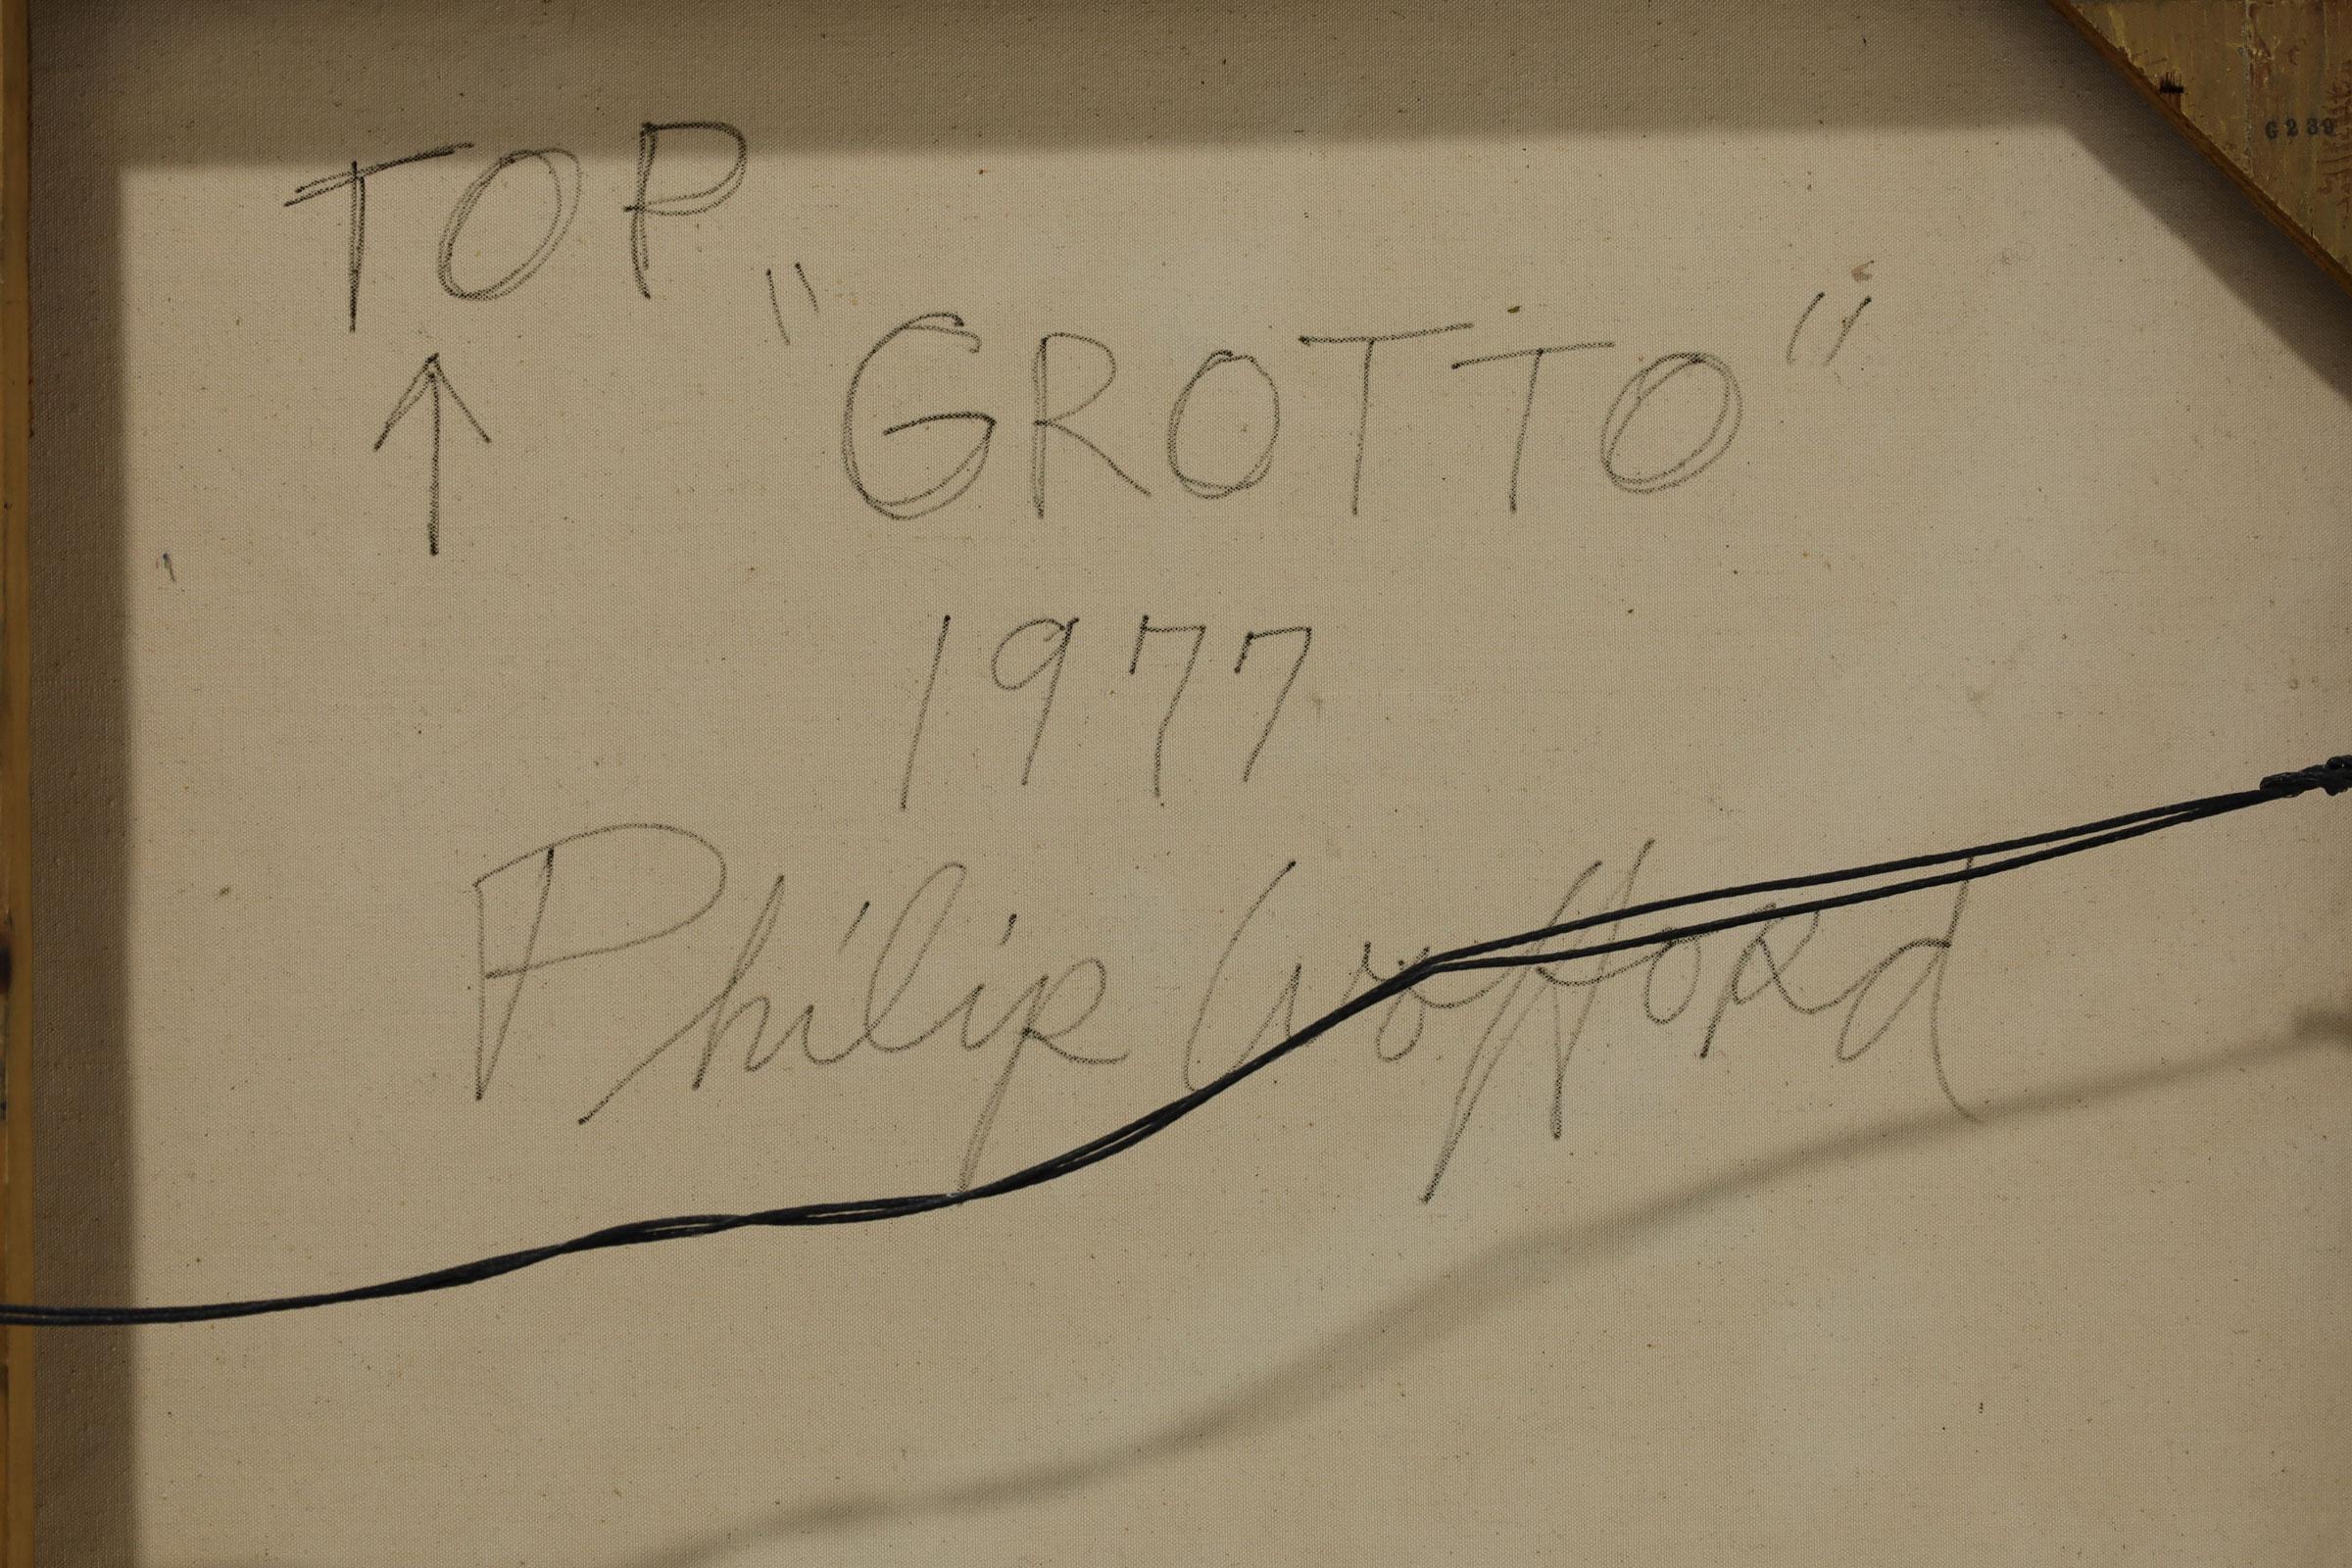 Philip Wofford, Acryl auf Leinwand „Grotto“, dtd. 1977,  61.5